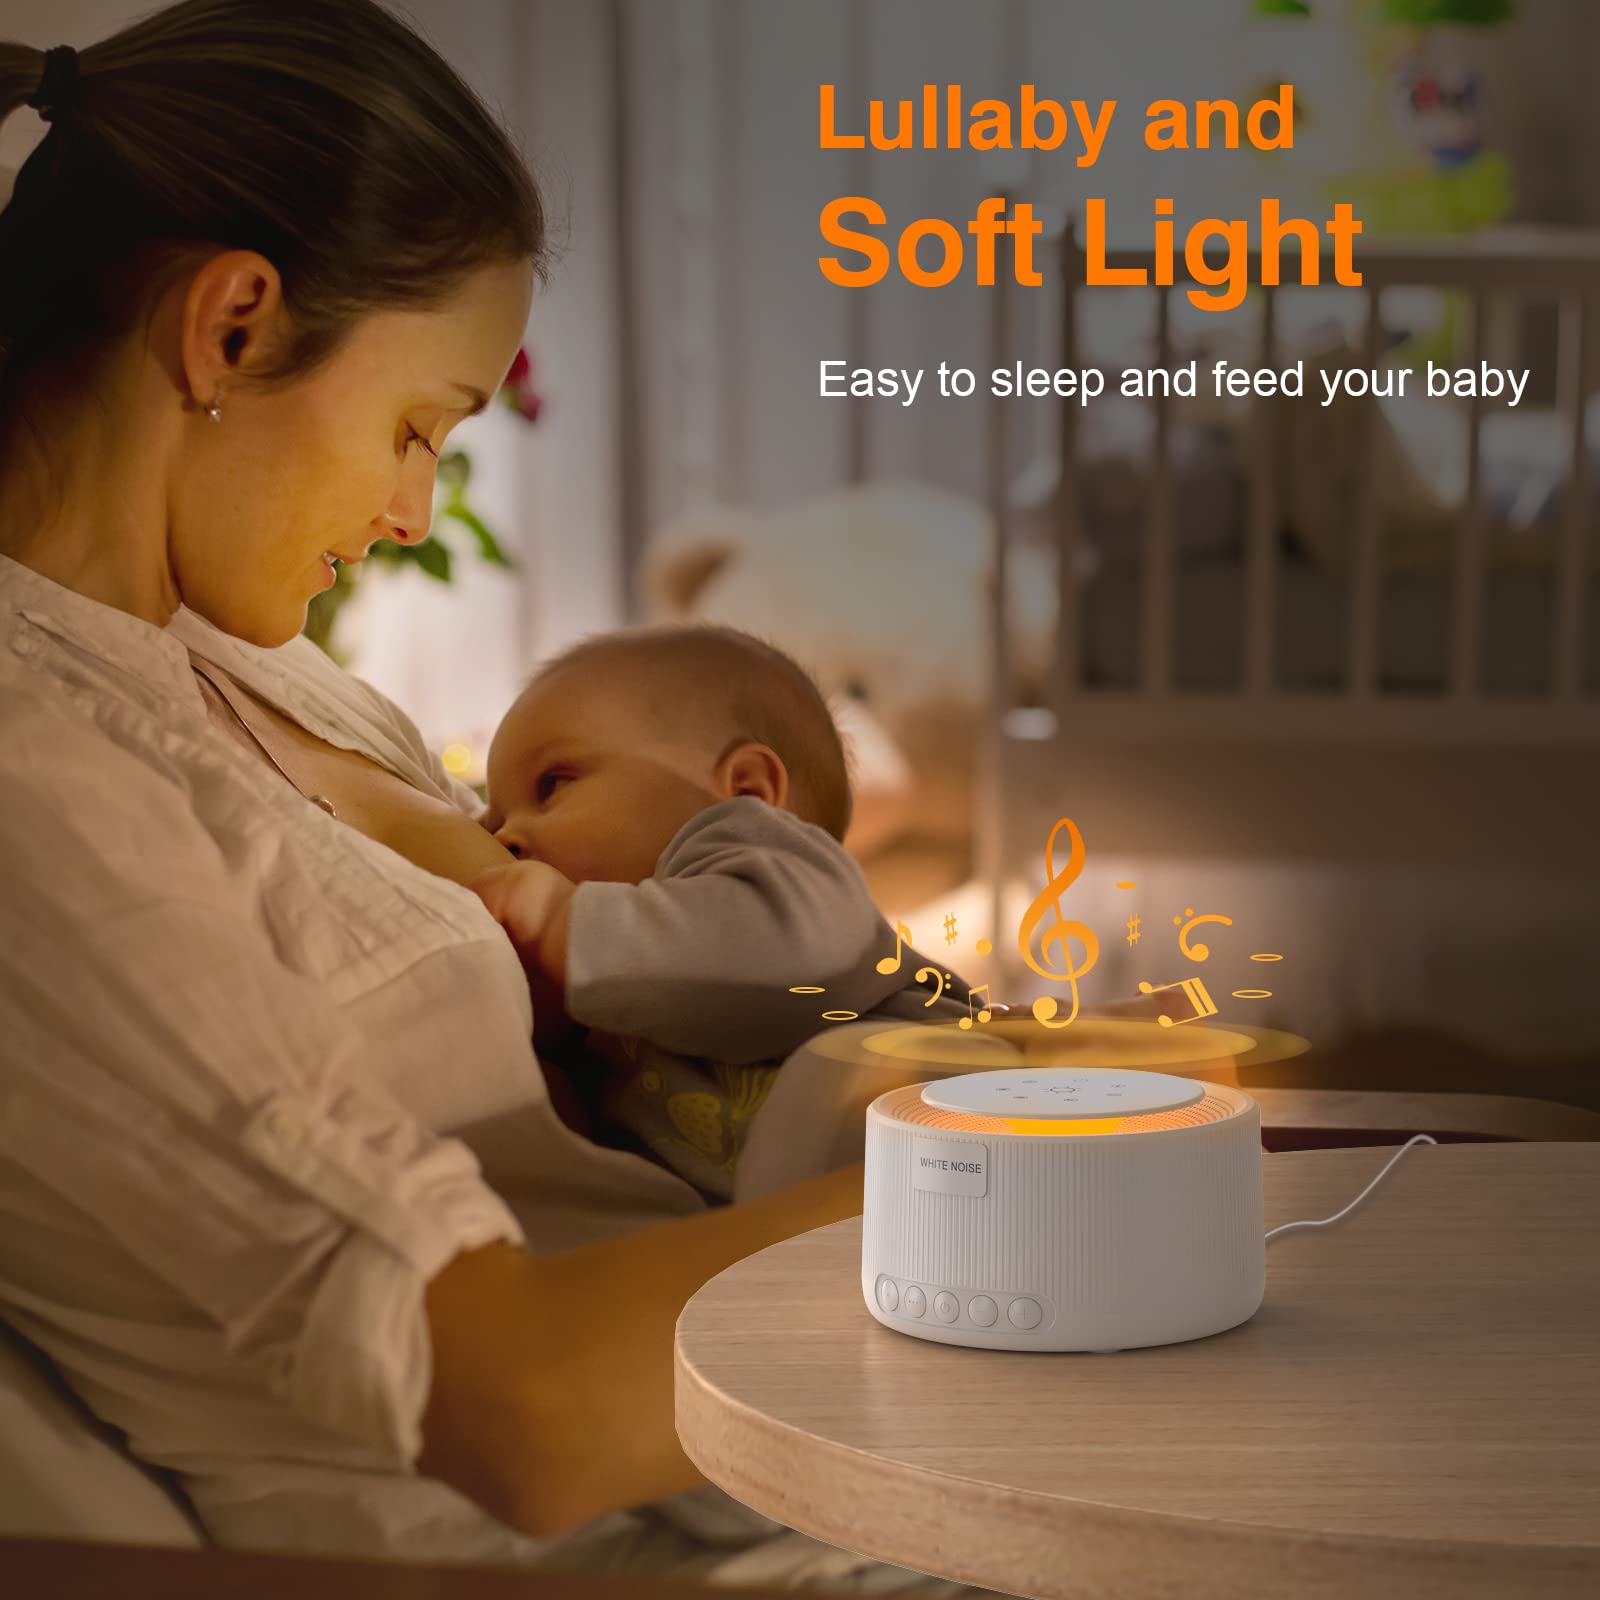 Sound machine - white noise sleep sound machine for babies children adults